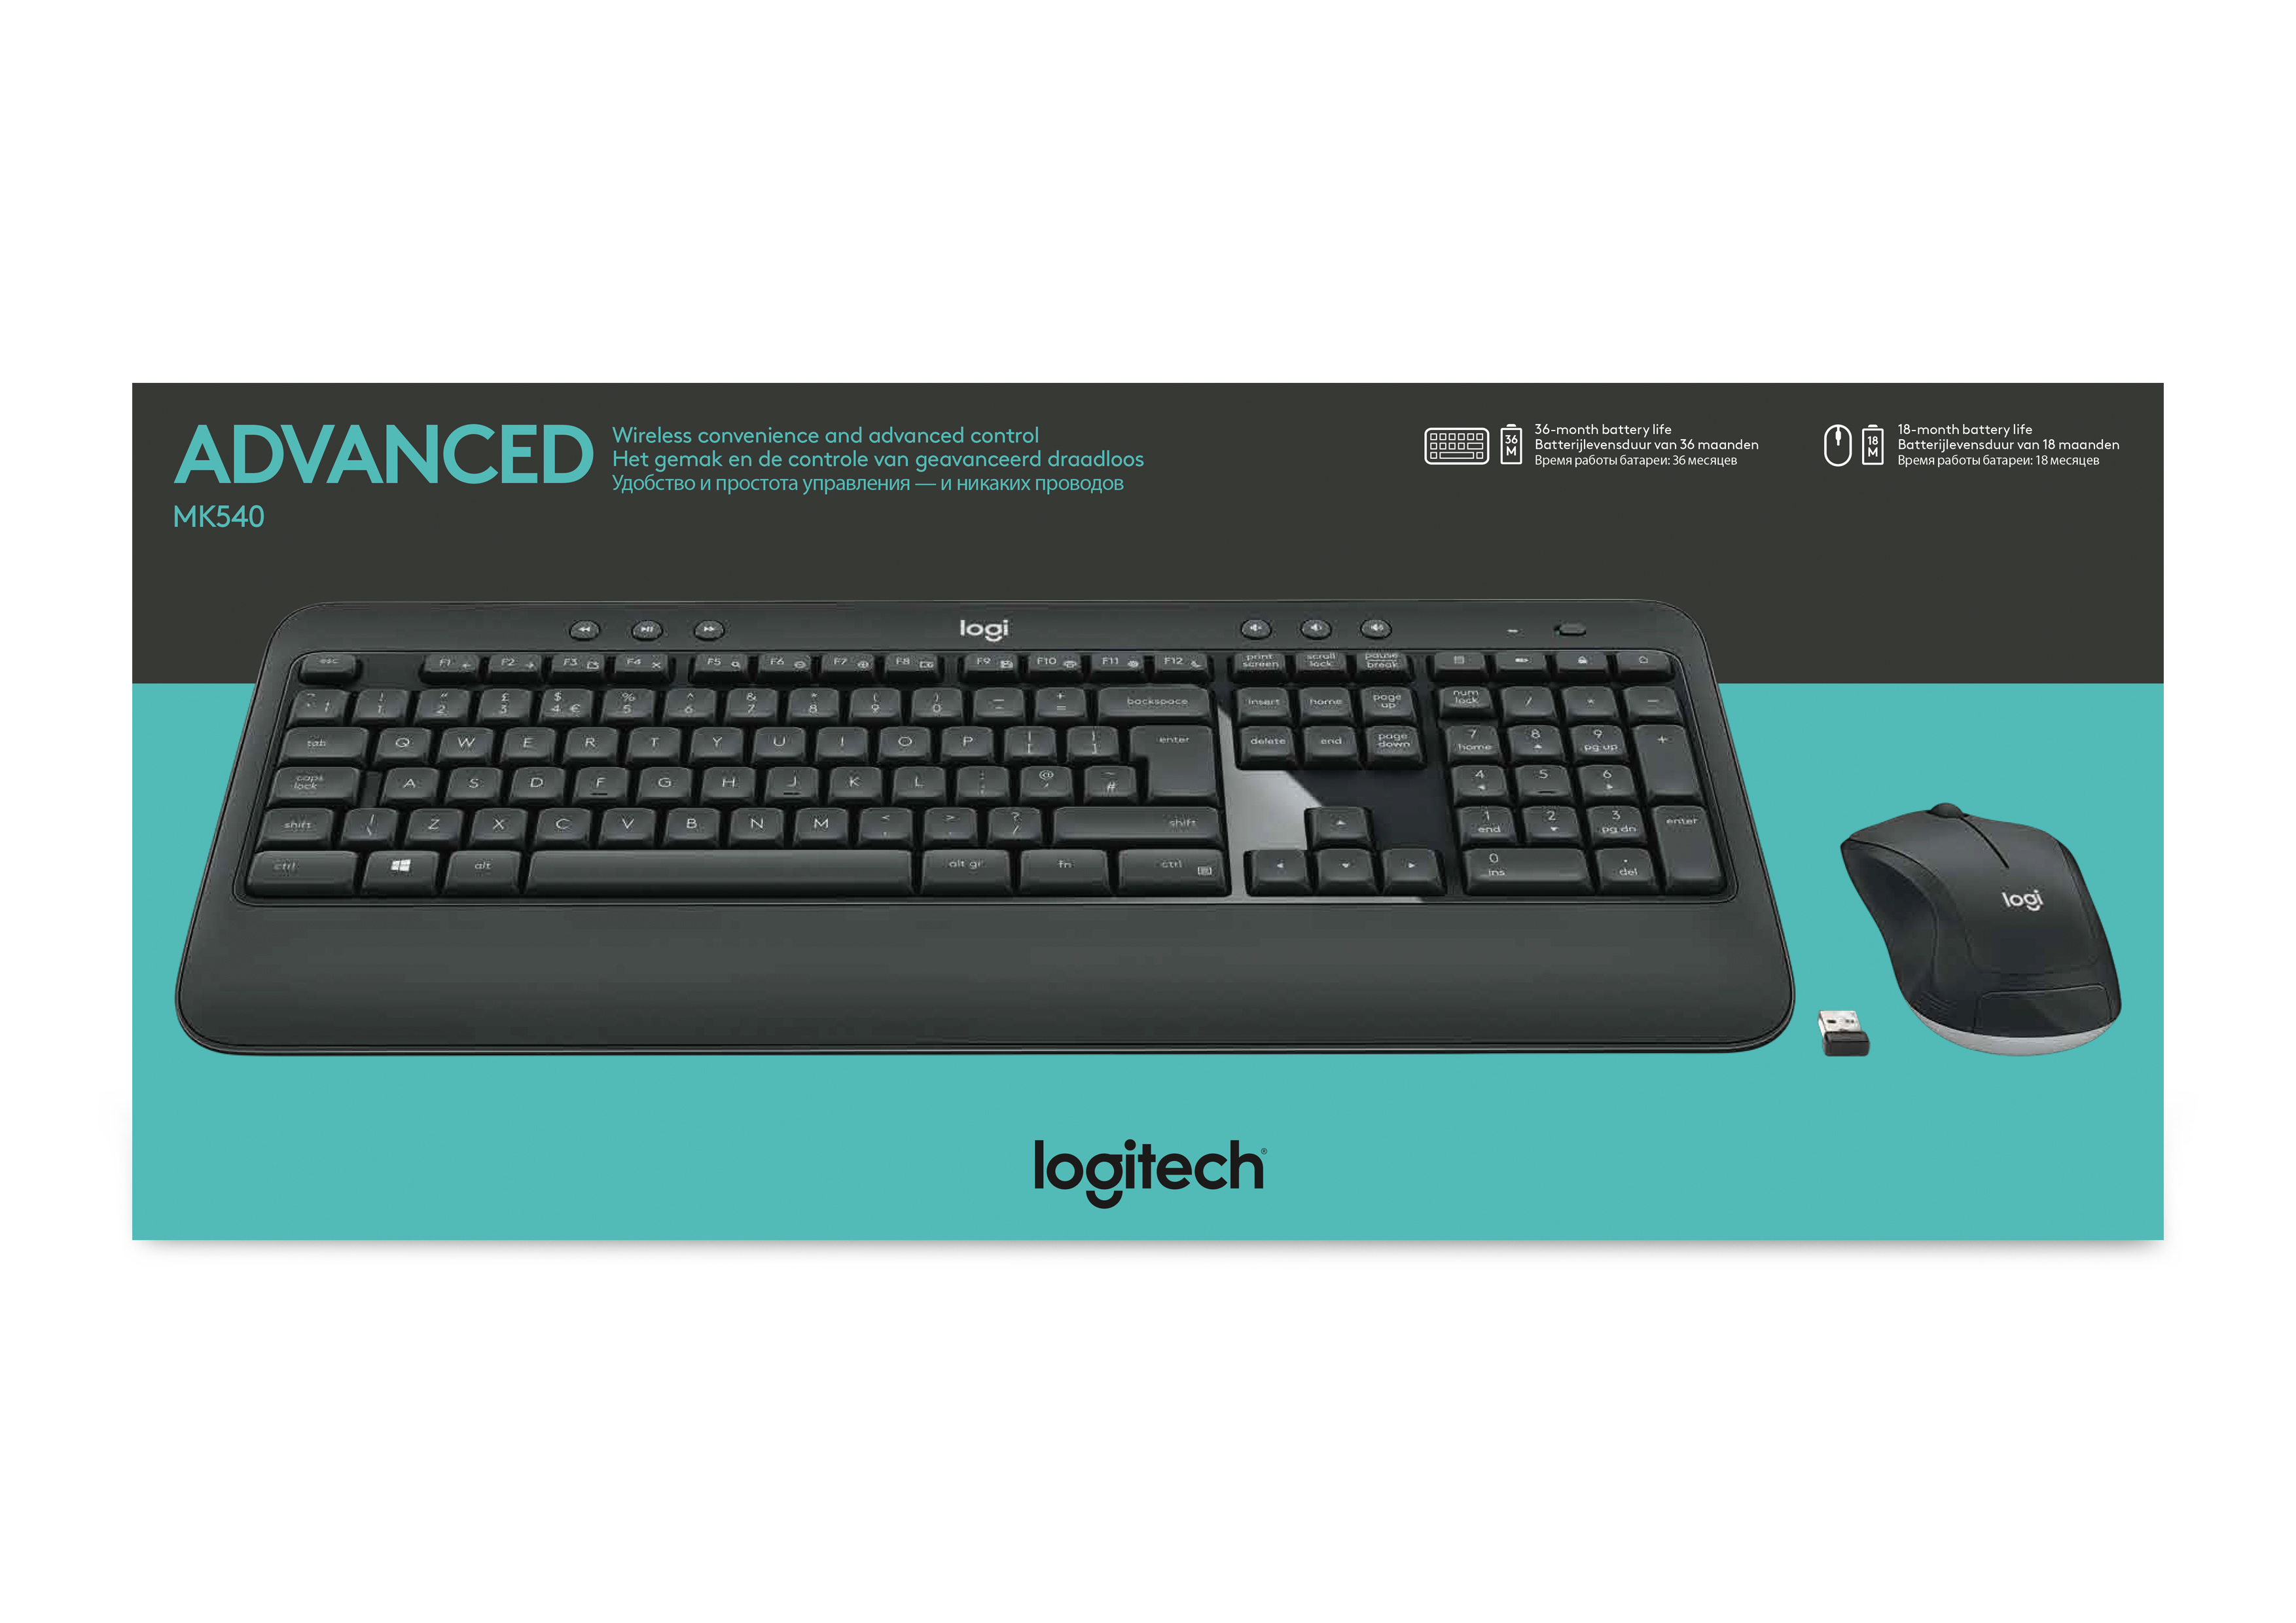 Logitech MK540 Advanced wireless keyboard + mouse set, draadloos, 2.4 GHz, vs internationaal